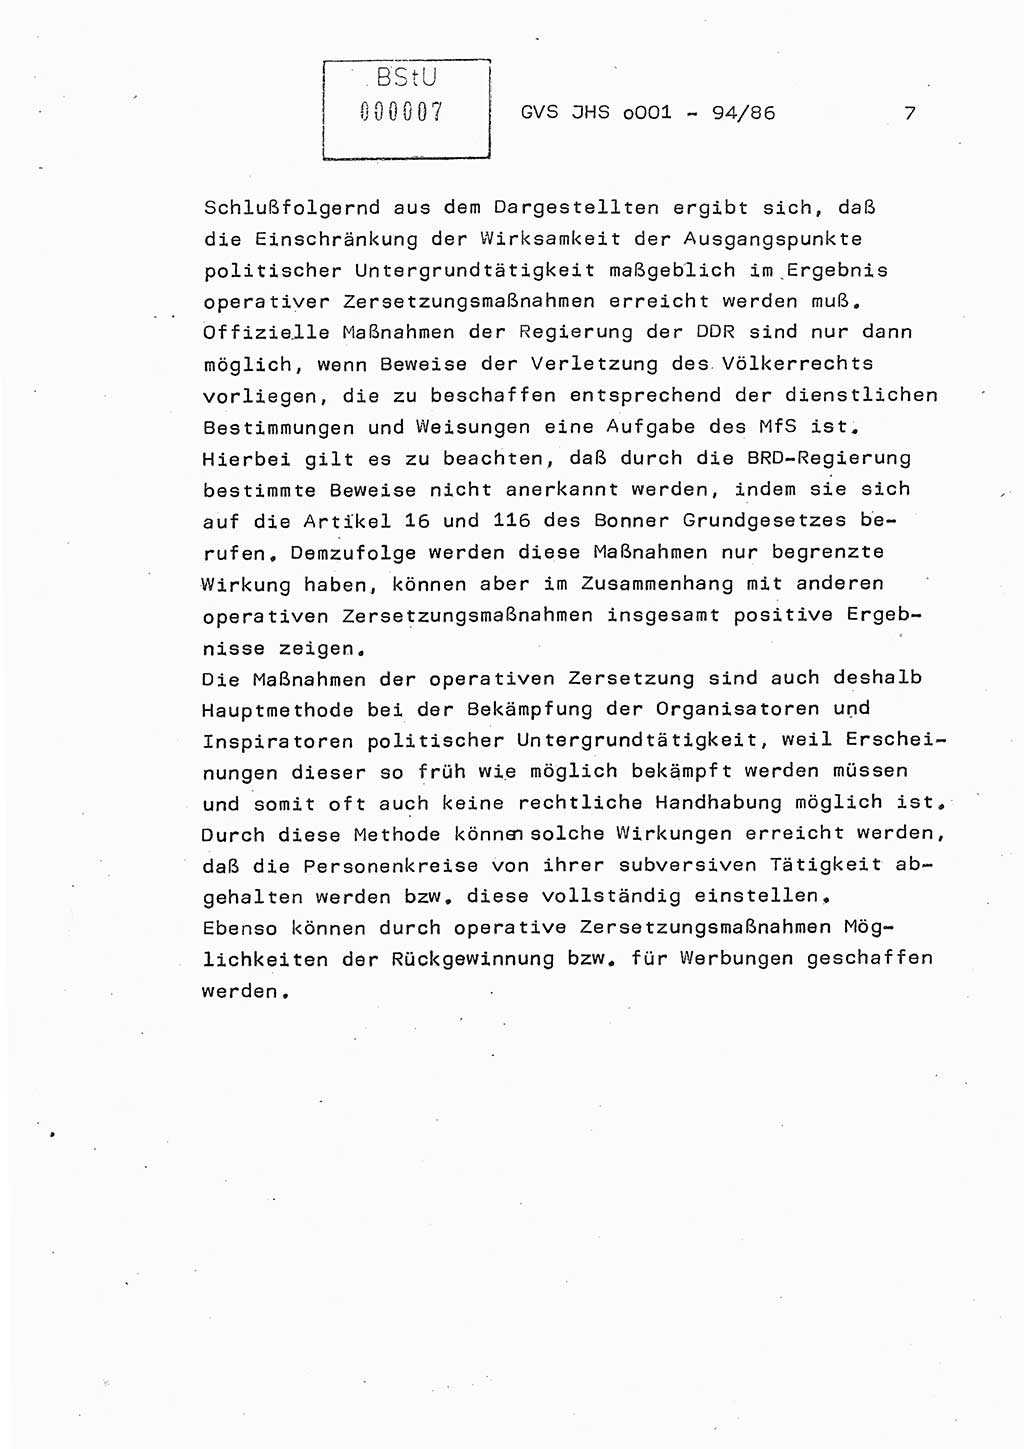 Diplomarbeit Oberleutnant Volkmar Pechmann (HA ⅩⅩ/5), Ministerium für Staatssicherheit (MfS) [Deutsche Demokratische Republik (DDR)], Juristische Hochschule (JHS), Geheime Verschlußsache (GVS) o001-94/86, Potsdam 1986, Blatt 7 (Dipl.-Arb. MfS DDR JHS GVS o001-94/86 1986, Bl. 7)